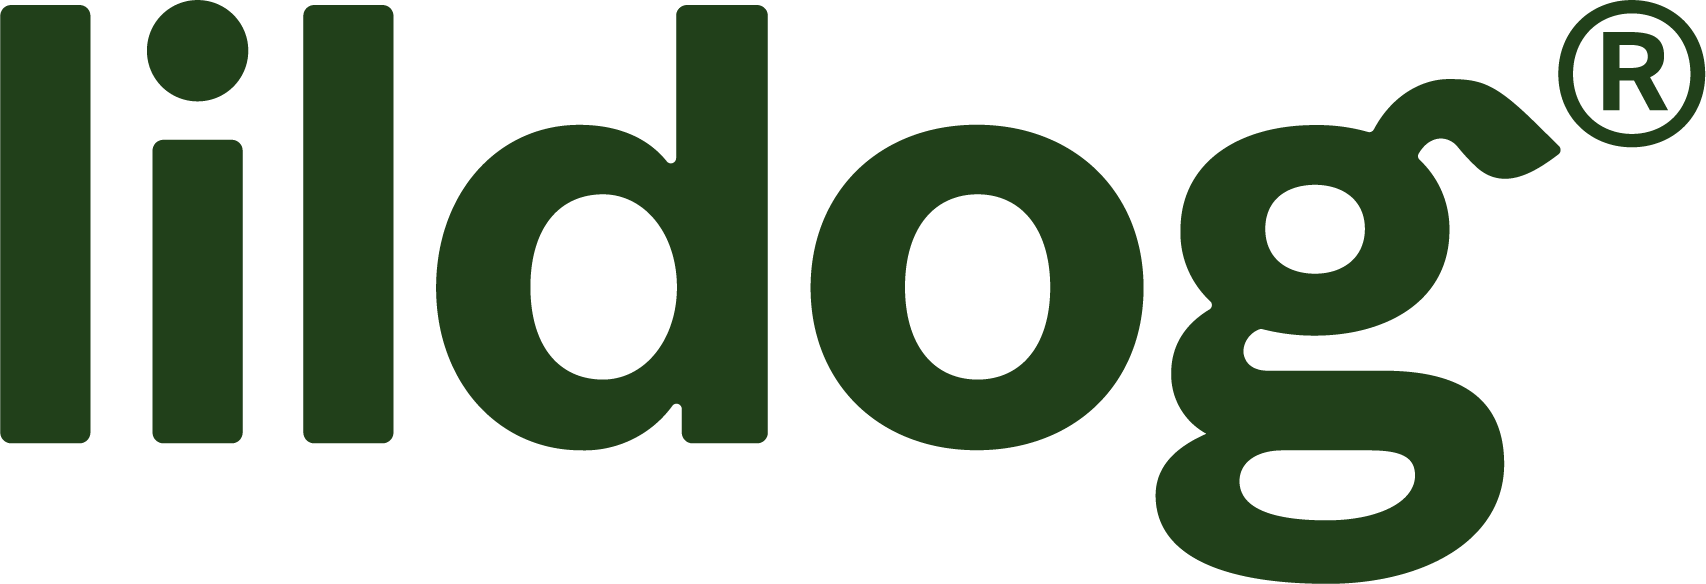 Lildog logo